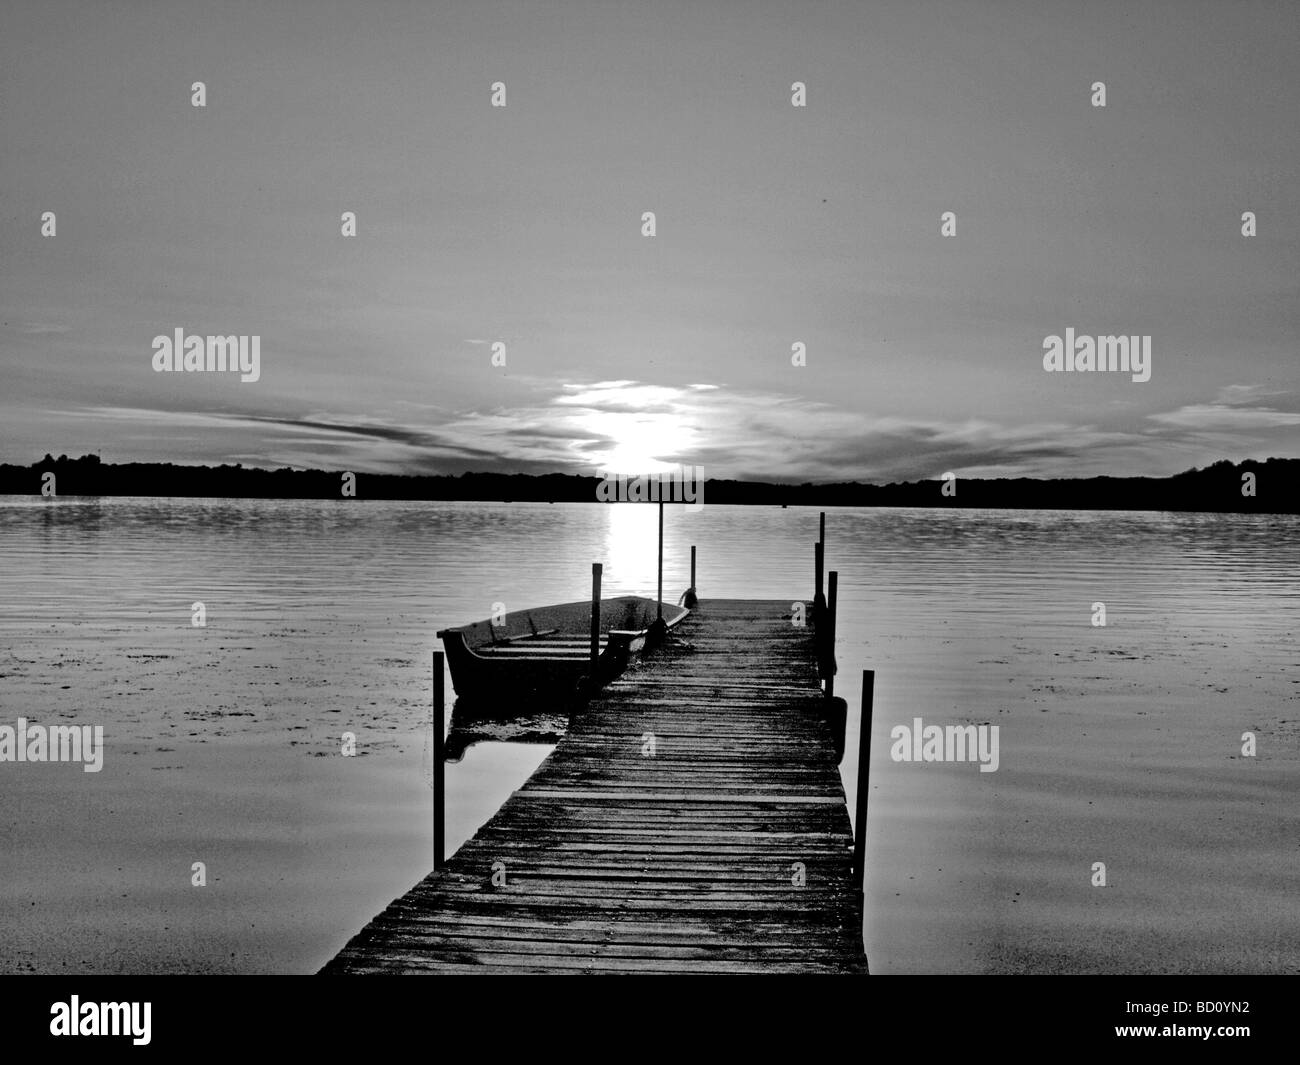 Vue de la rive sur le lac comme si on se tient à la fin d'un dock pier avec barque voile à la recherche sur un coucher de soleil et sur les rives, b & w Banque D'Images